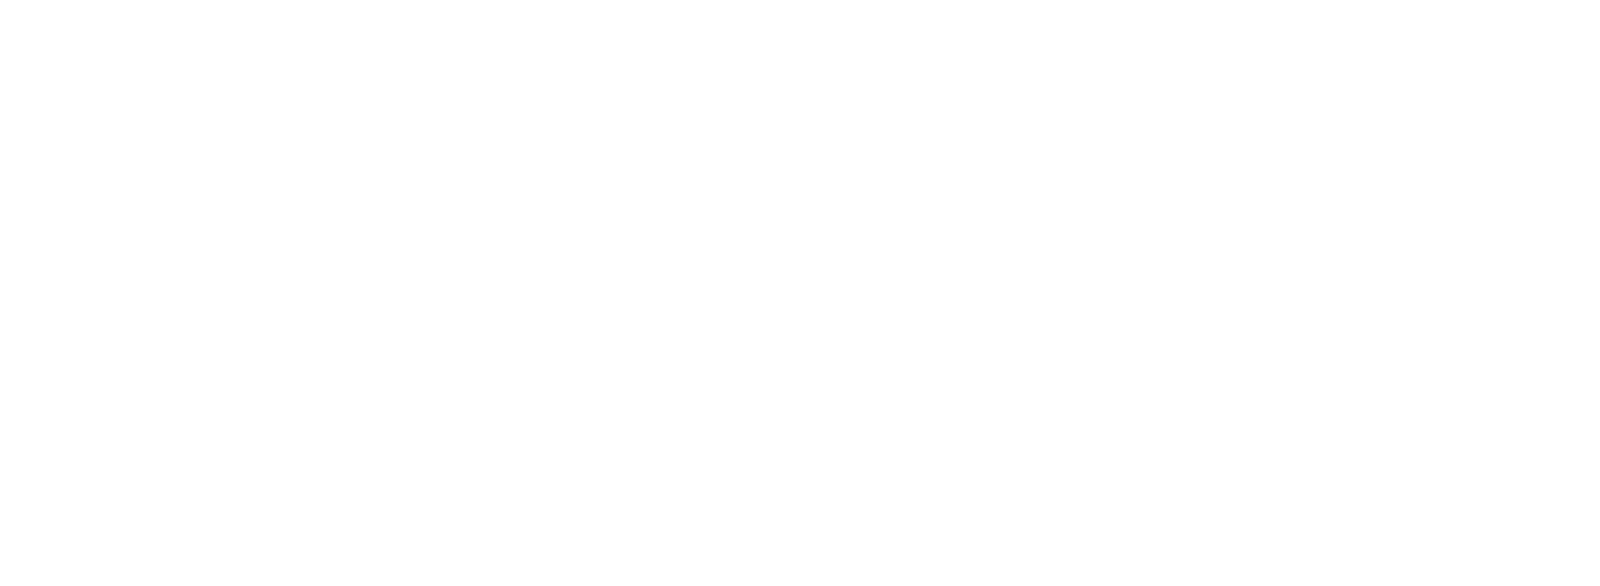 BetaTech Business Insider